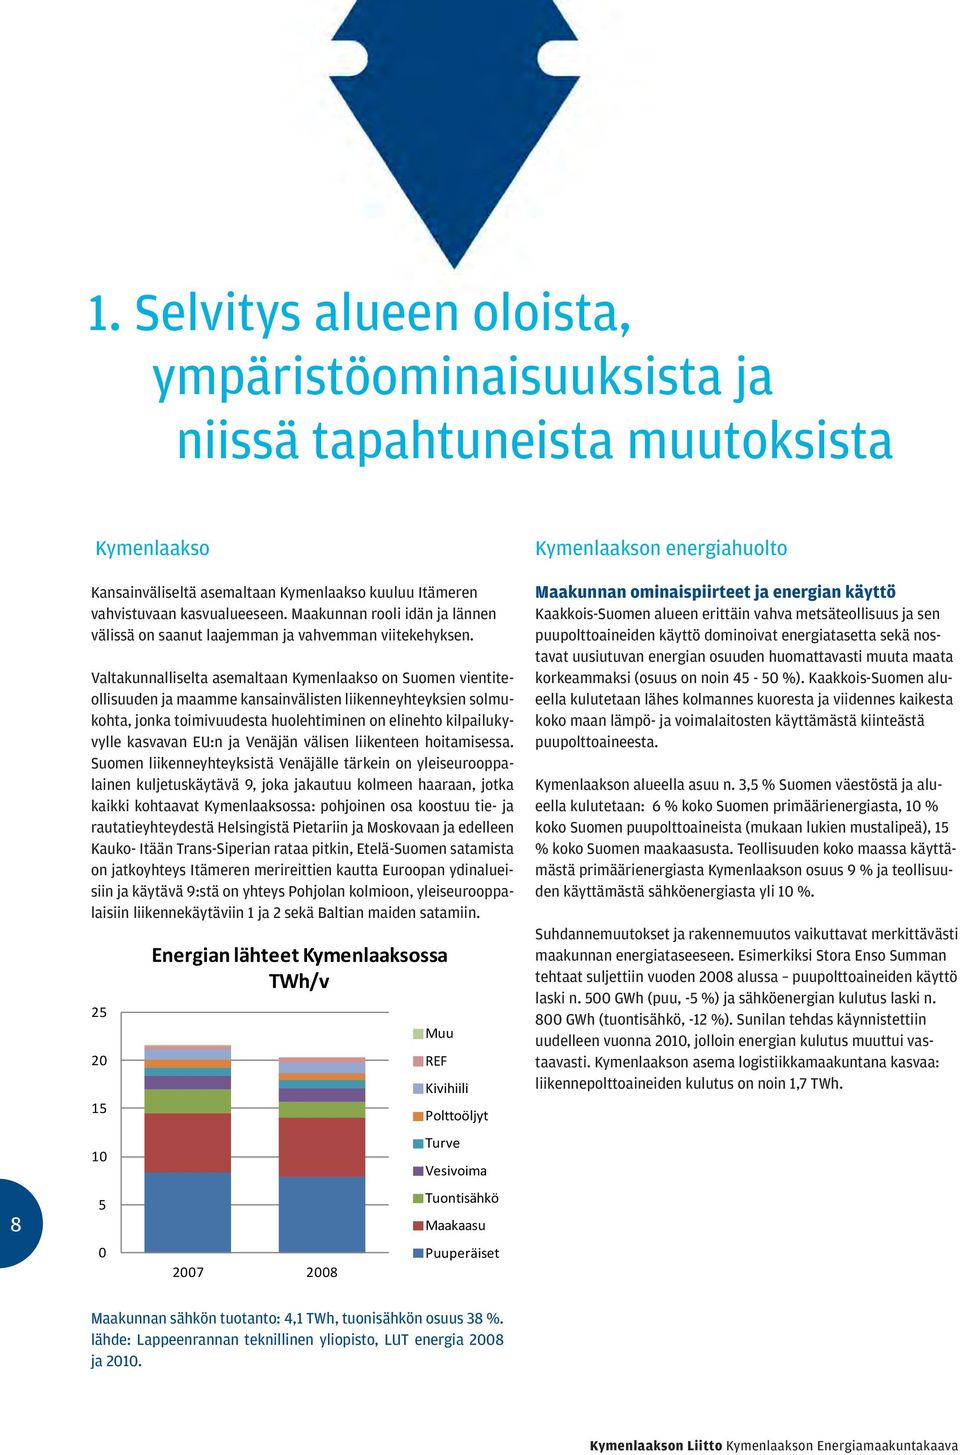 Valtakunnalliselta asemaltaan Kymenlaakso on Suomen vientiteollisuuden ja maamme kansainvälisten liikenneyhteyksien solmukohta, jonka toimivuudesta huolehtiminen on elinehto kilpailukyvylle kasvavan